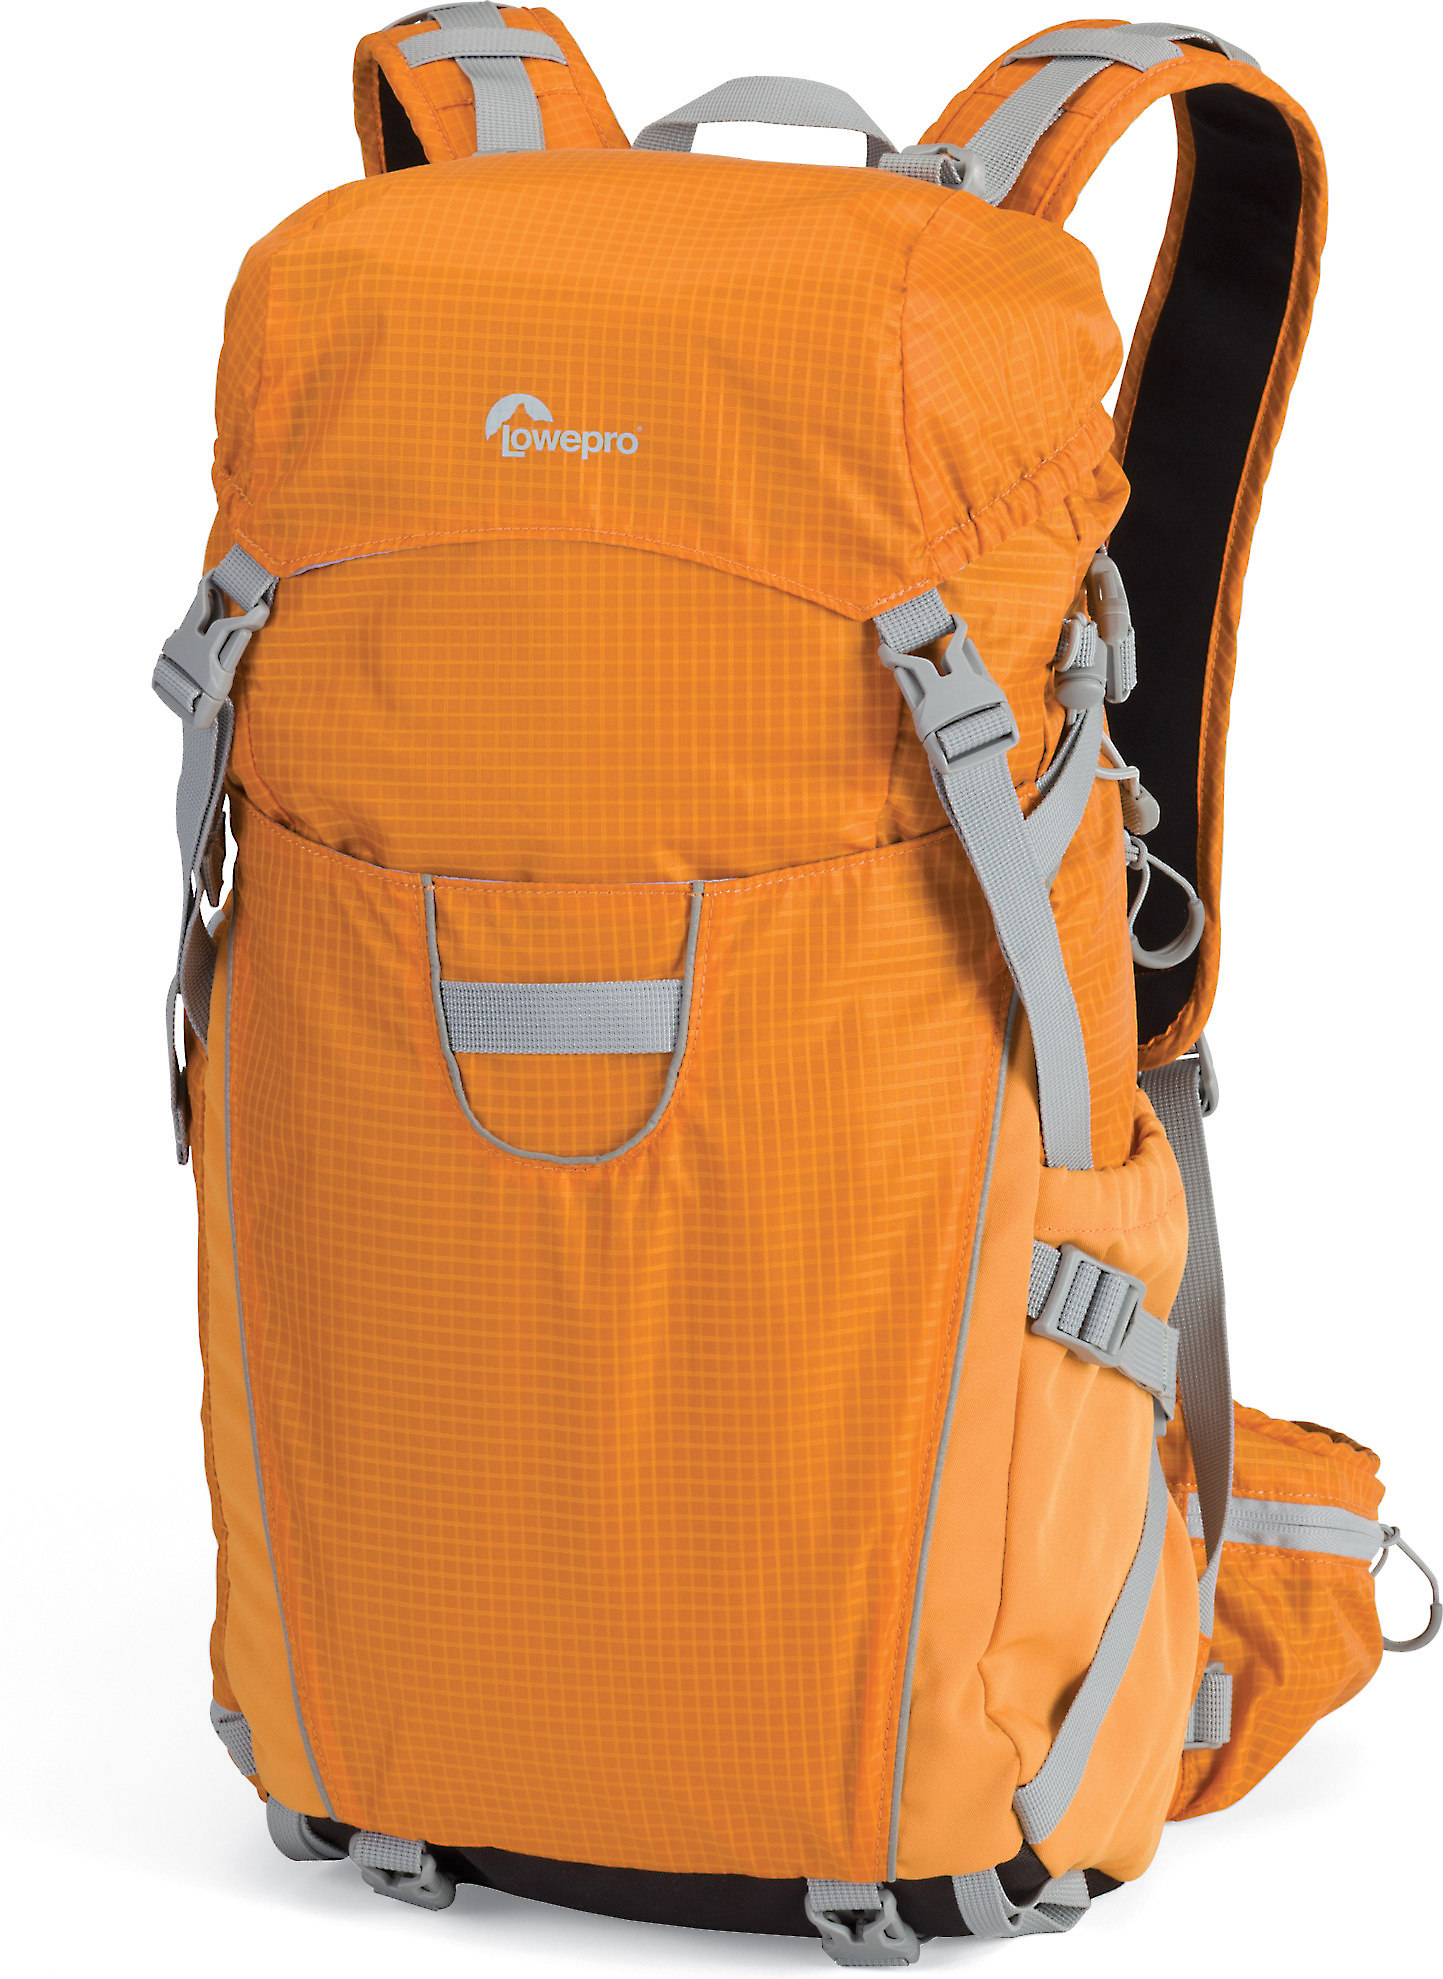 lowepro camera backpack orange